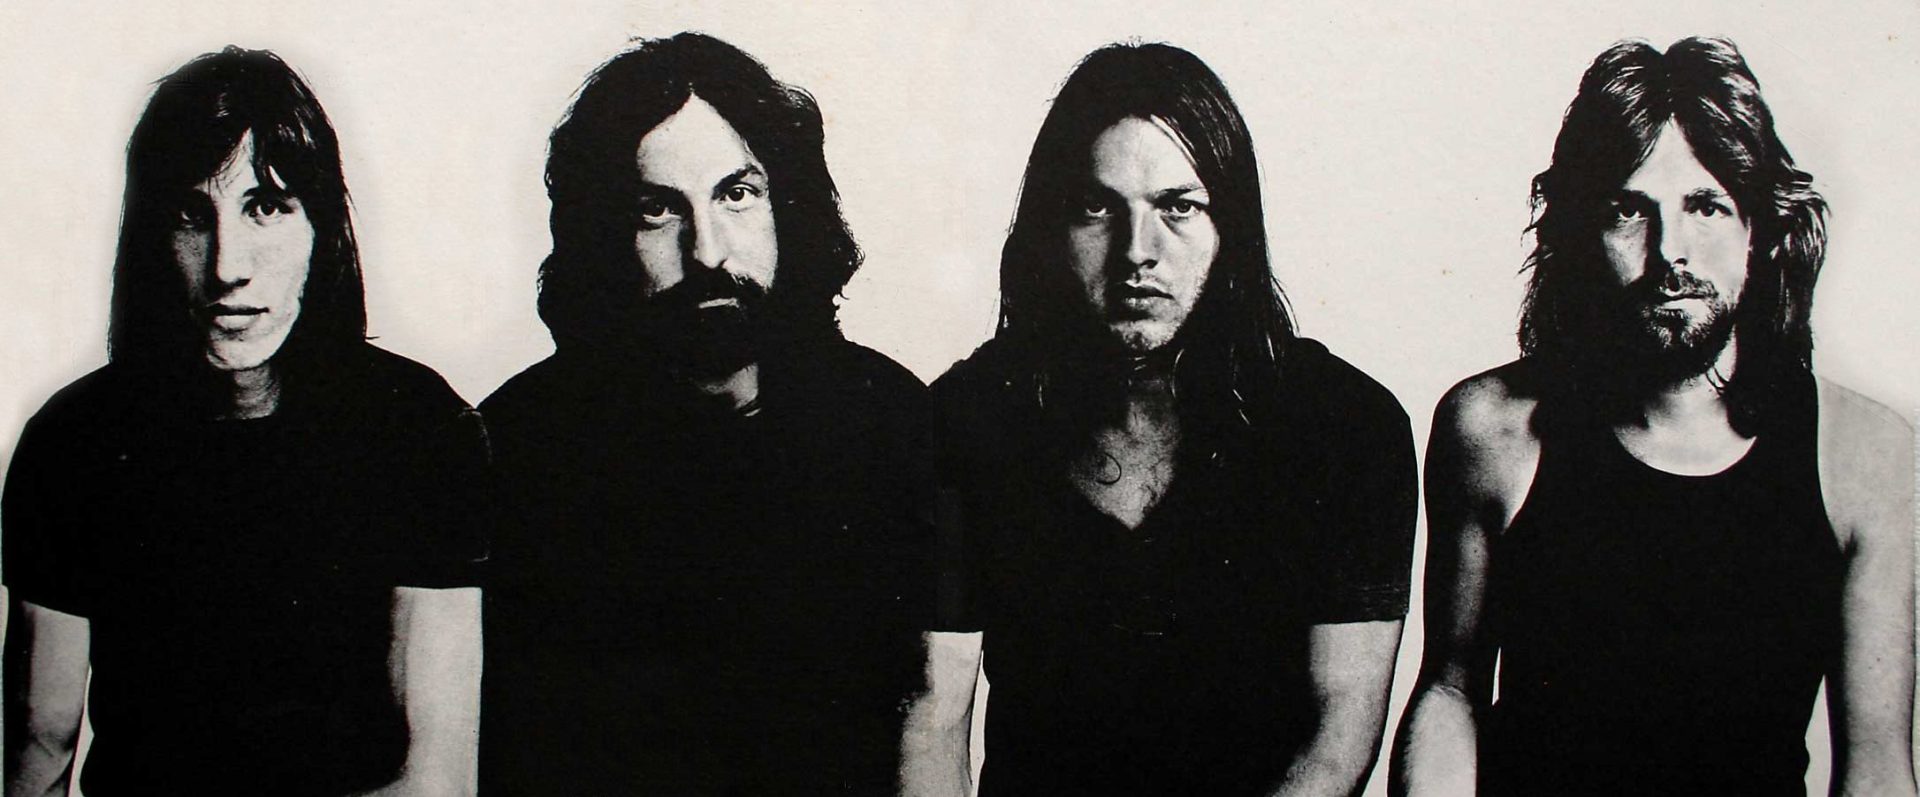  La música de Pink Floyd mejora tu salud mental, según la ciencia